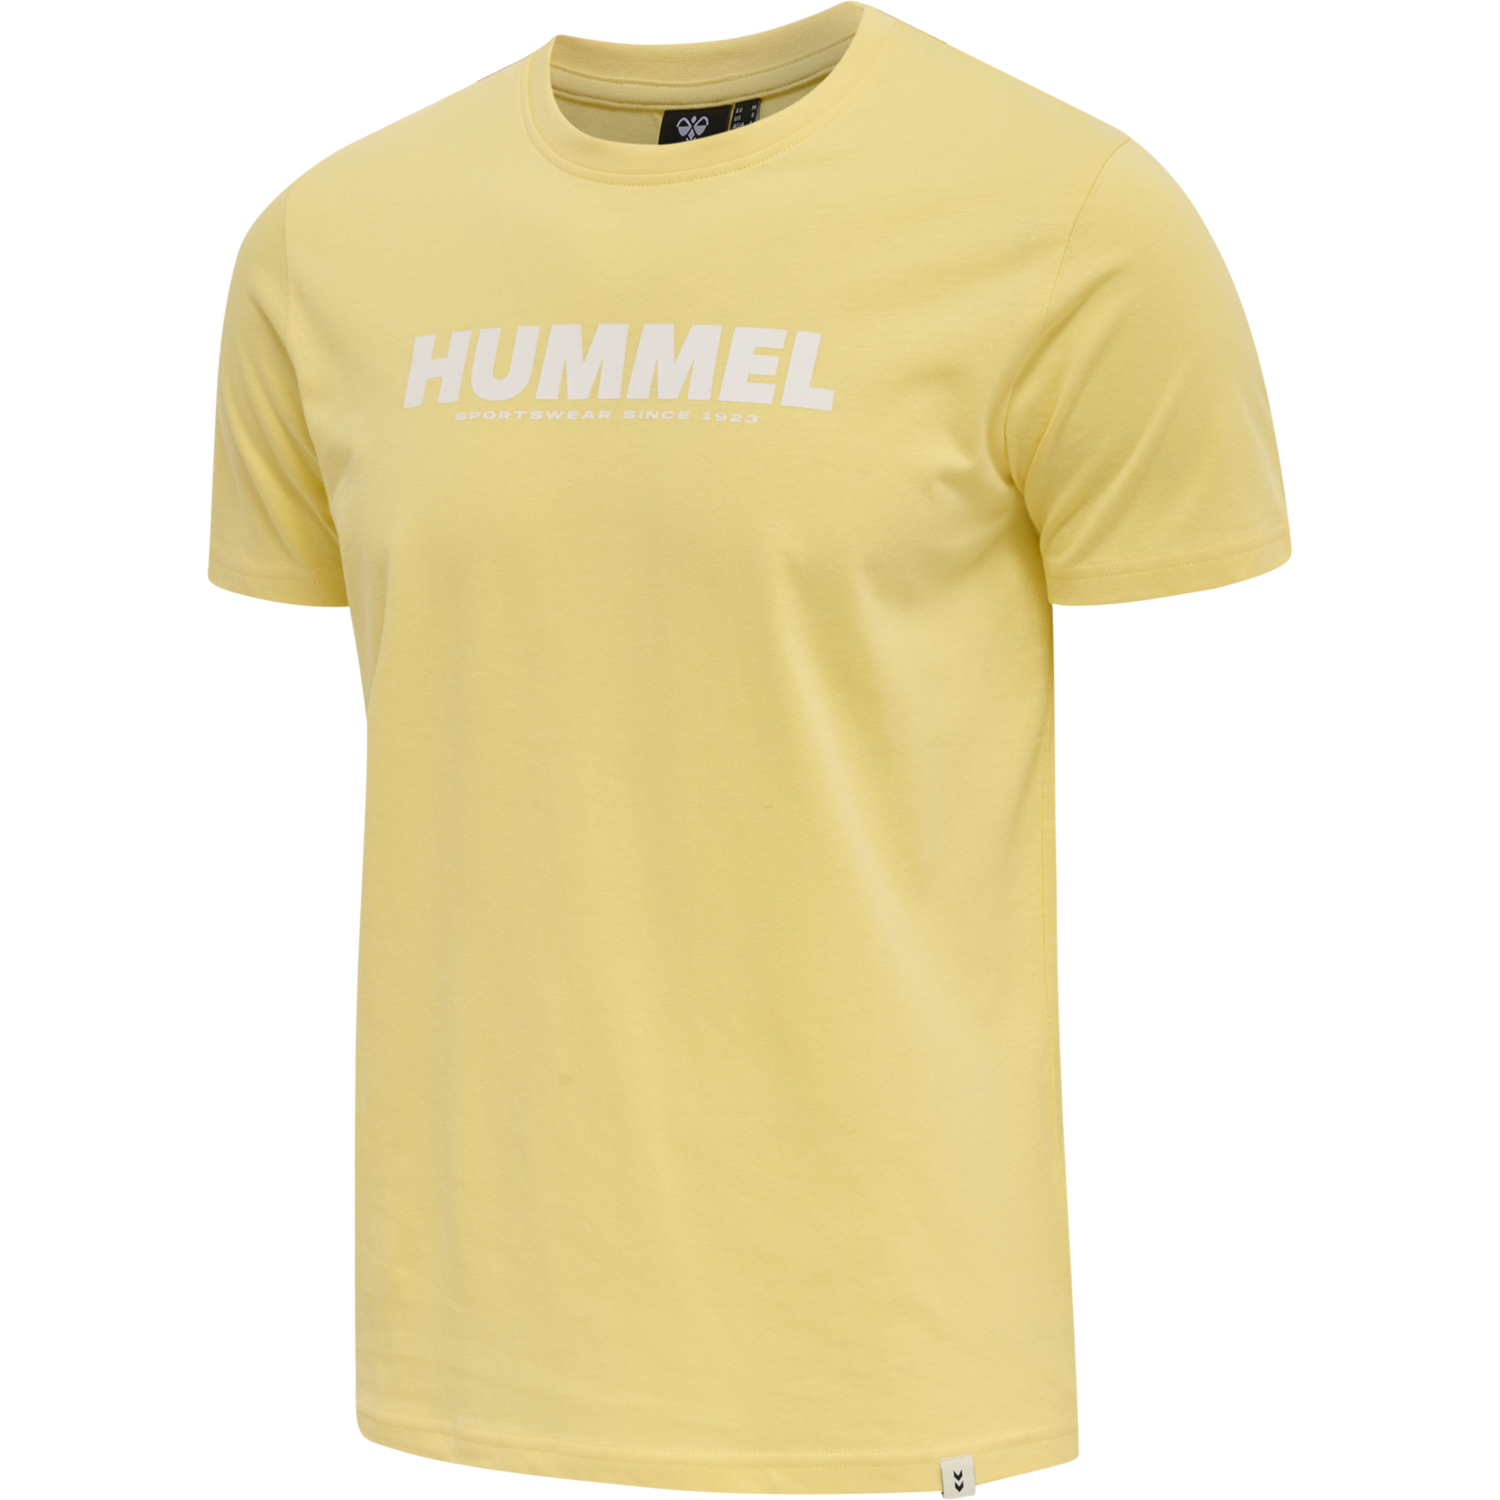 Hummel Freizeit und Training Baumwolle Logo T-Shirt Herren dunkellila 